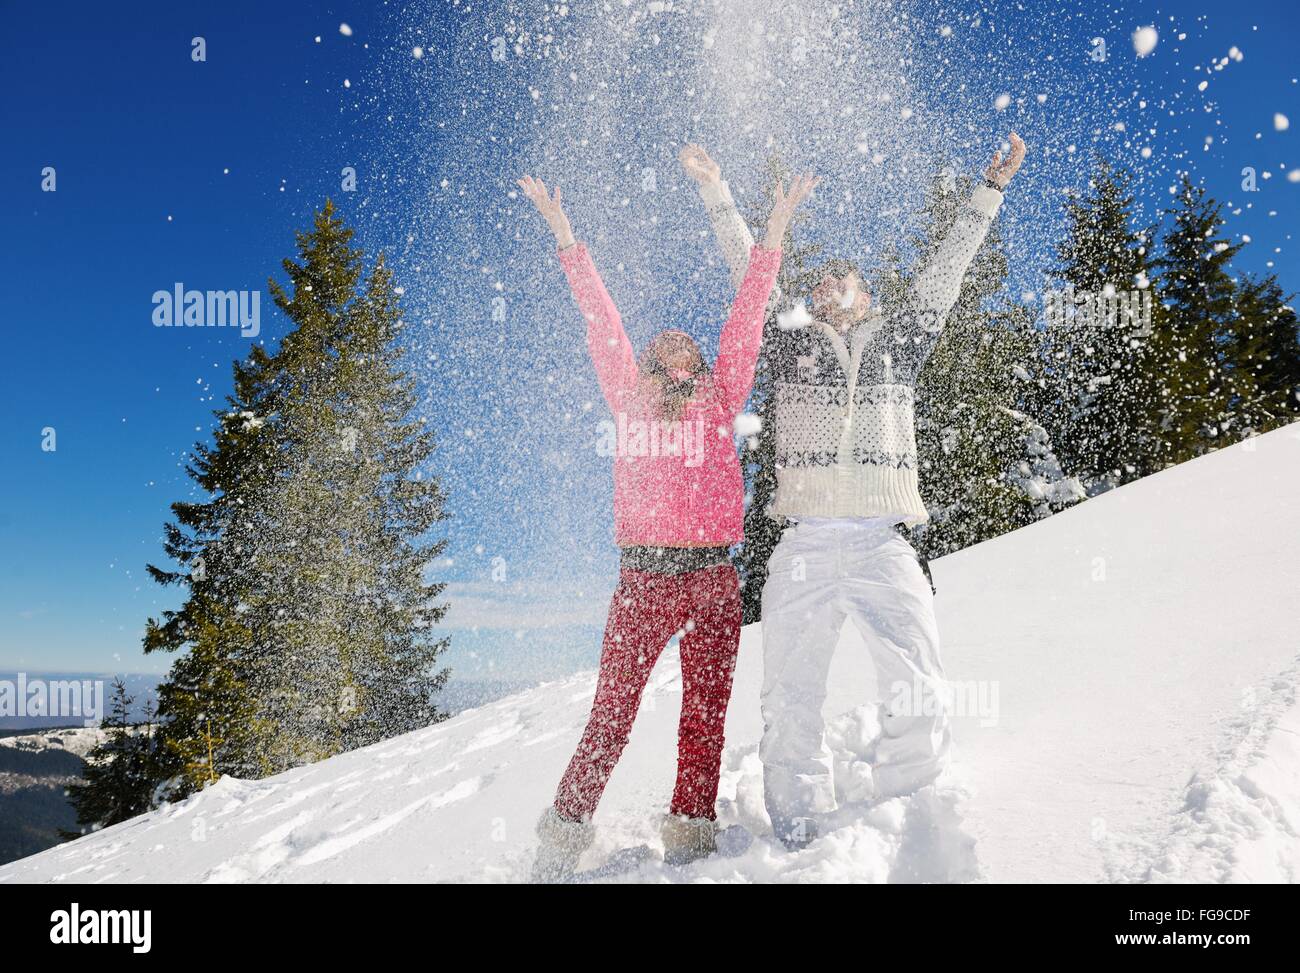 Coppia giovane in inverno scena di neve Foto Stock